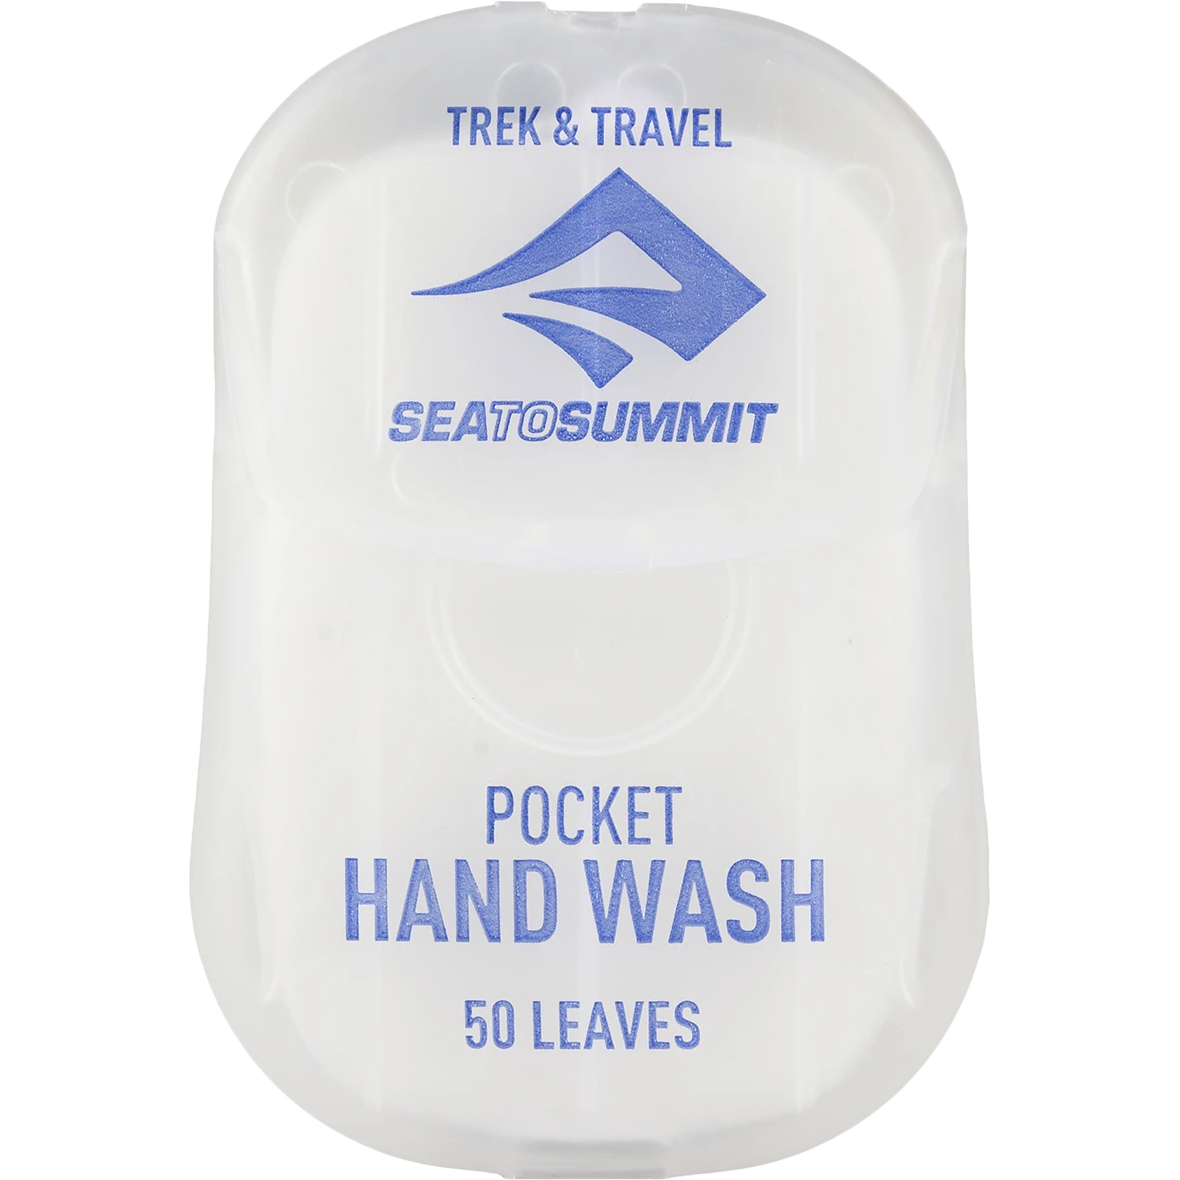 Pocket Hand Wash alternate view